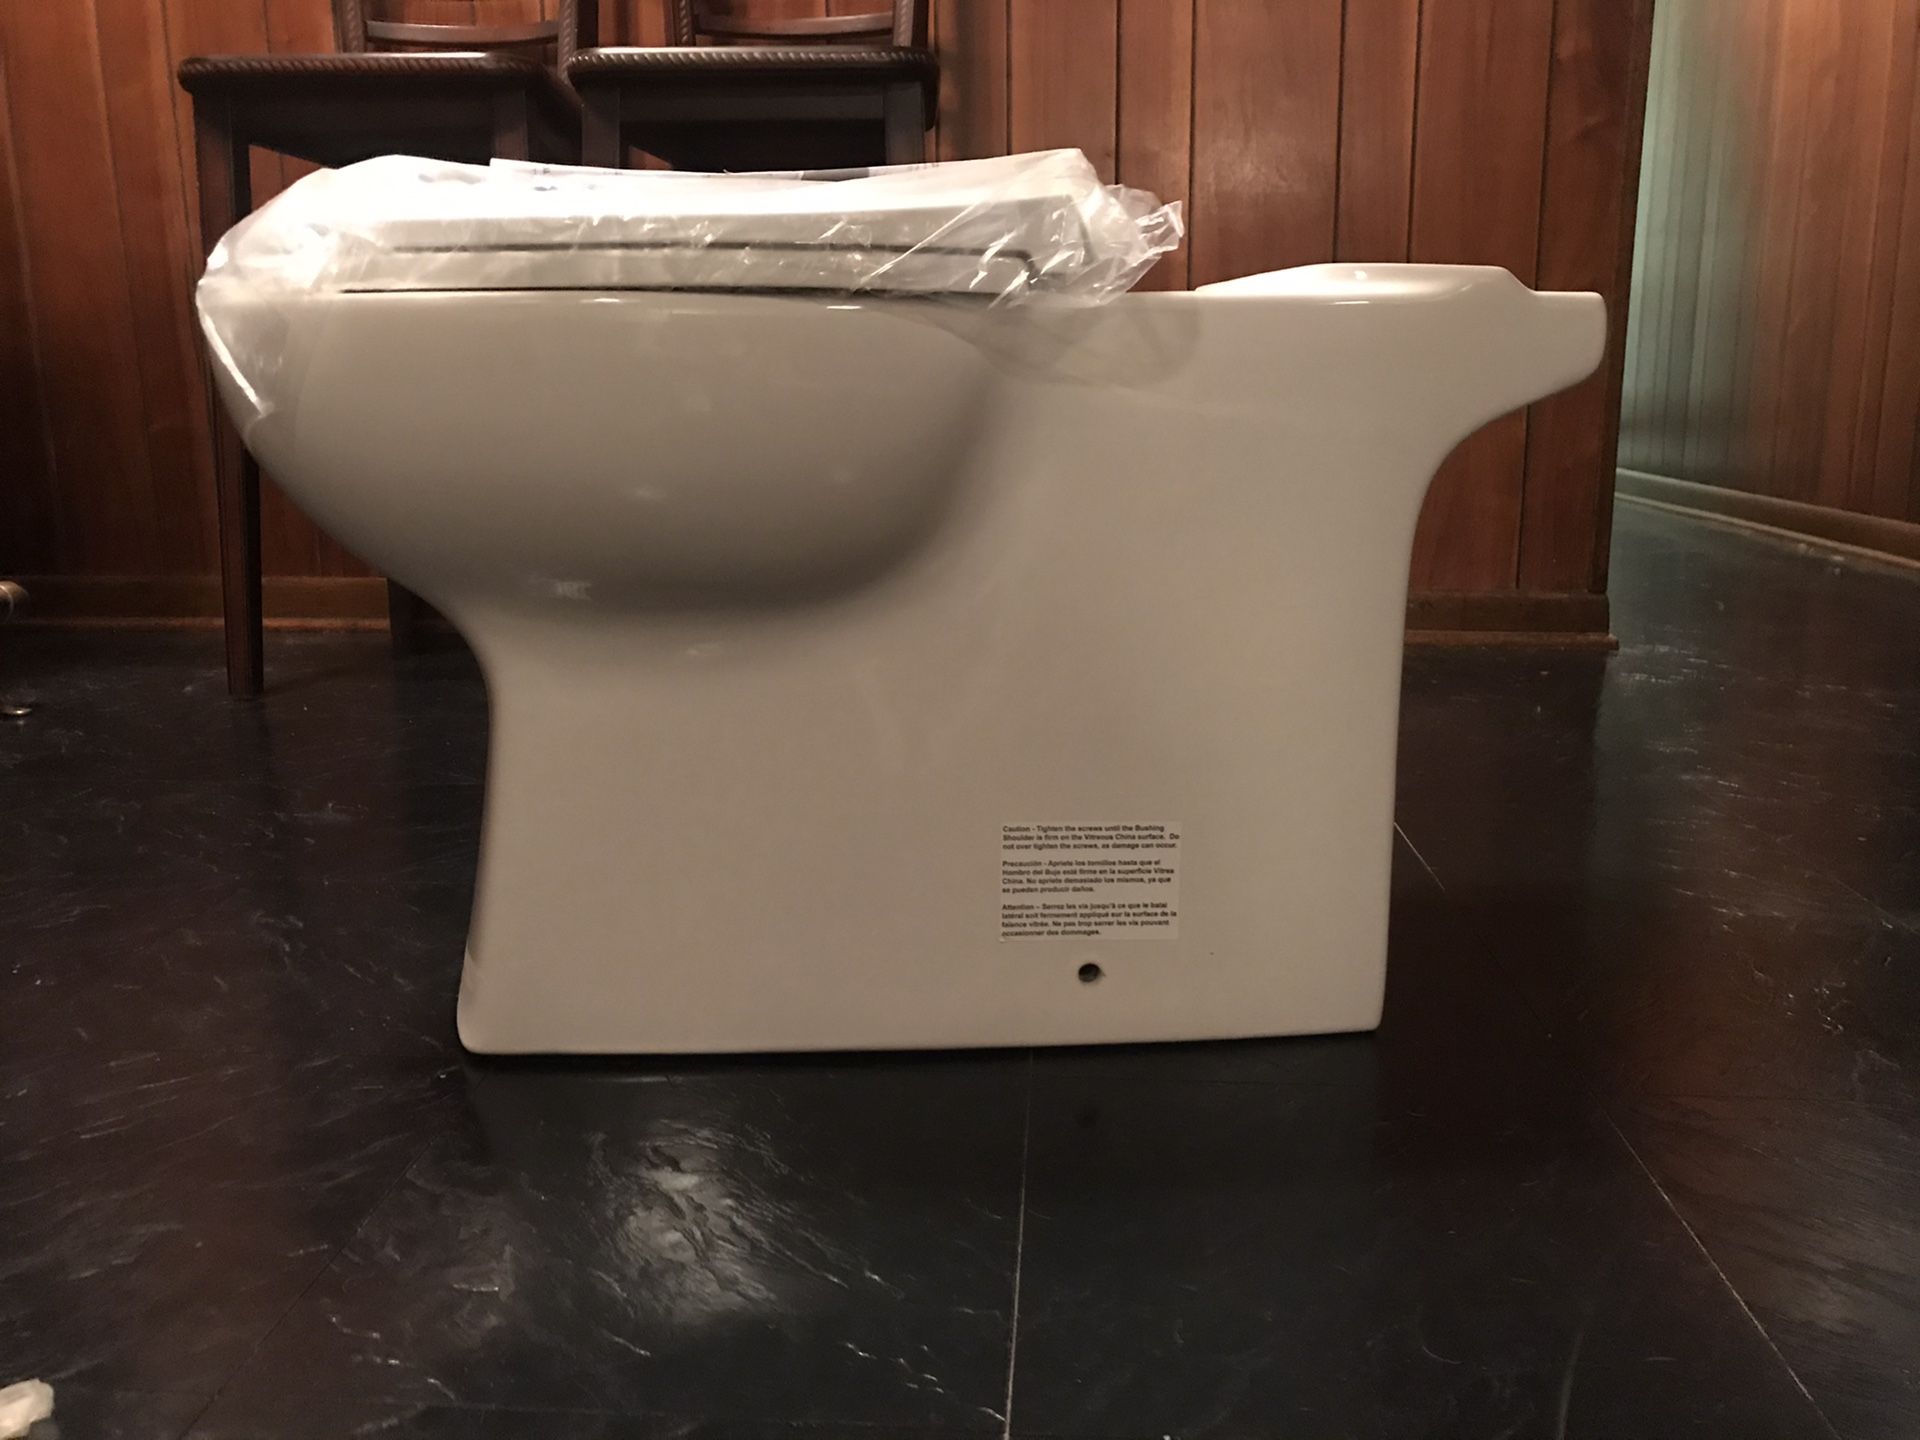 Delta Riosa Toilet new in box!